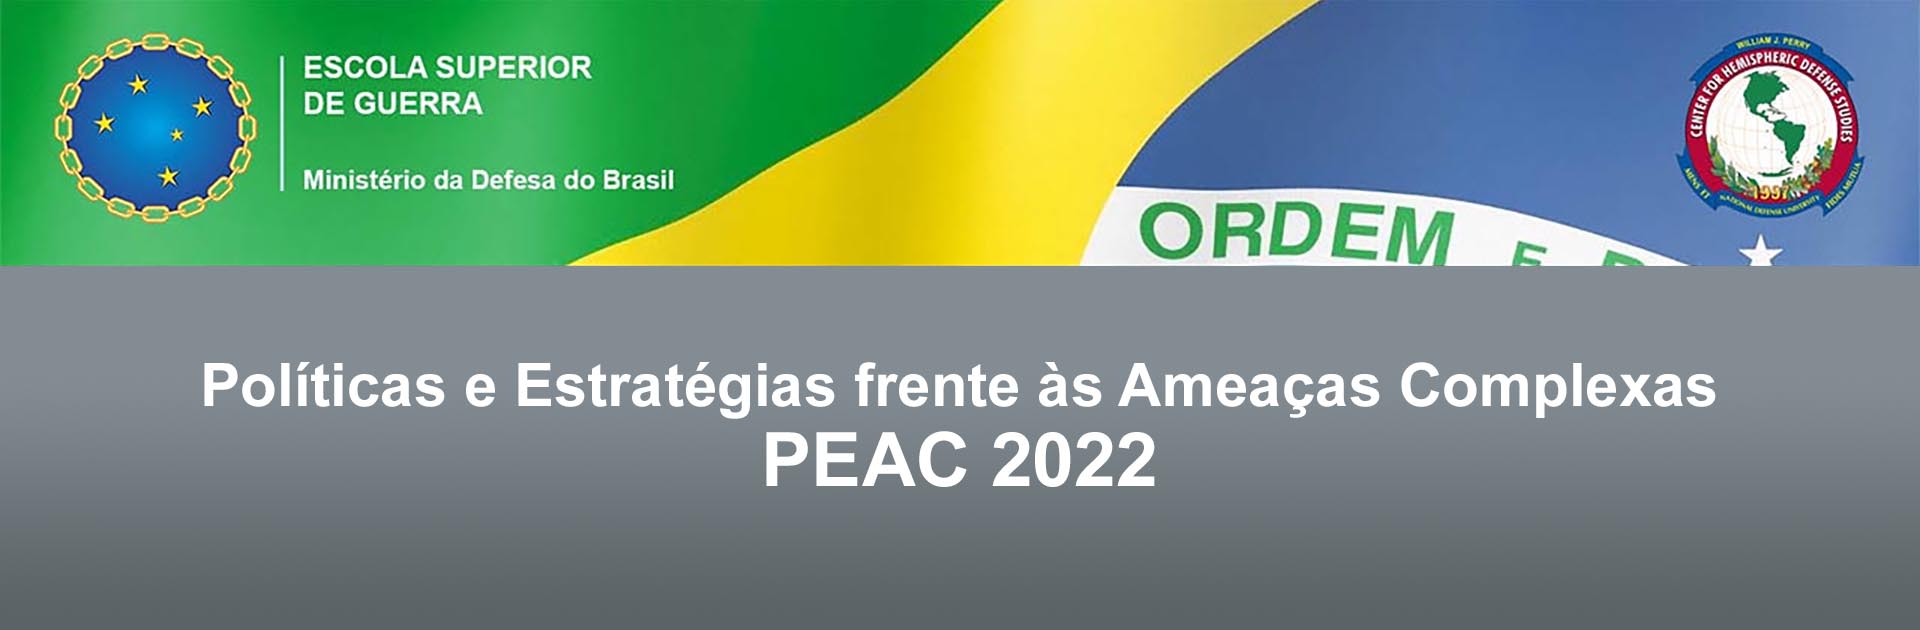 PEAC 2022 Course